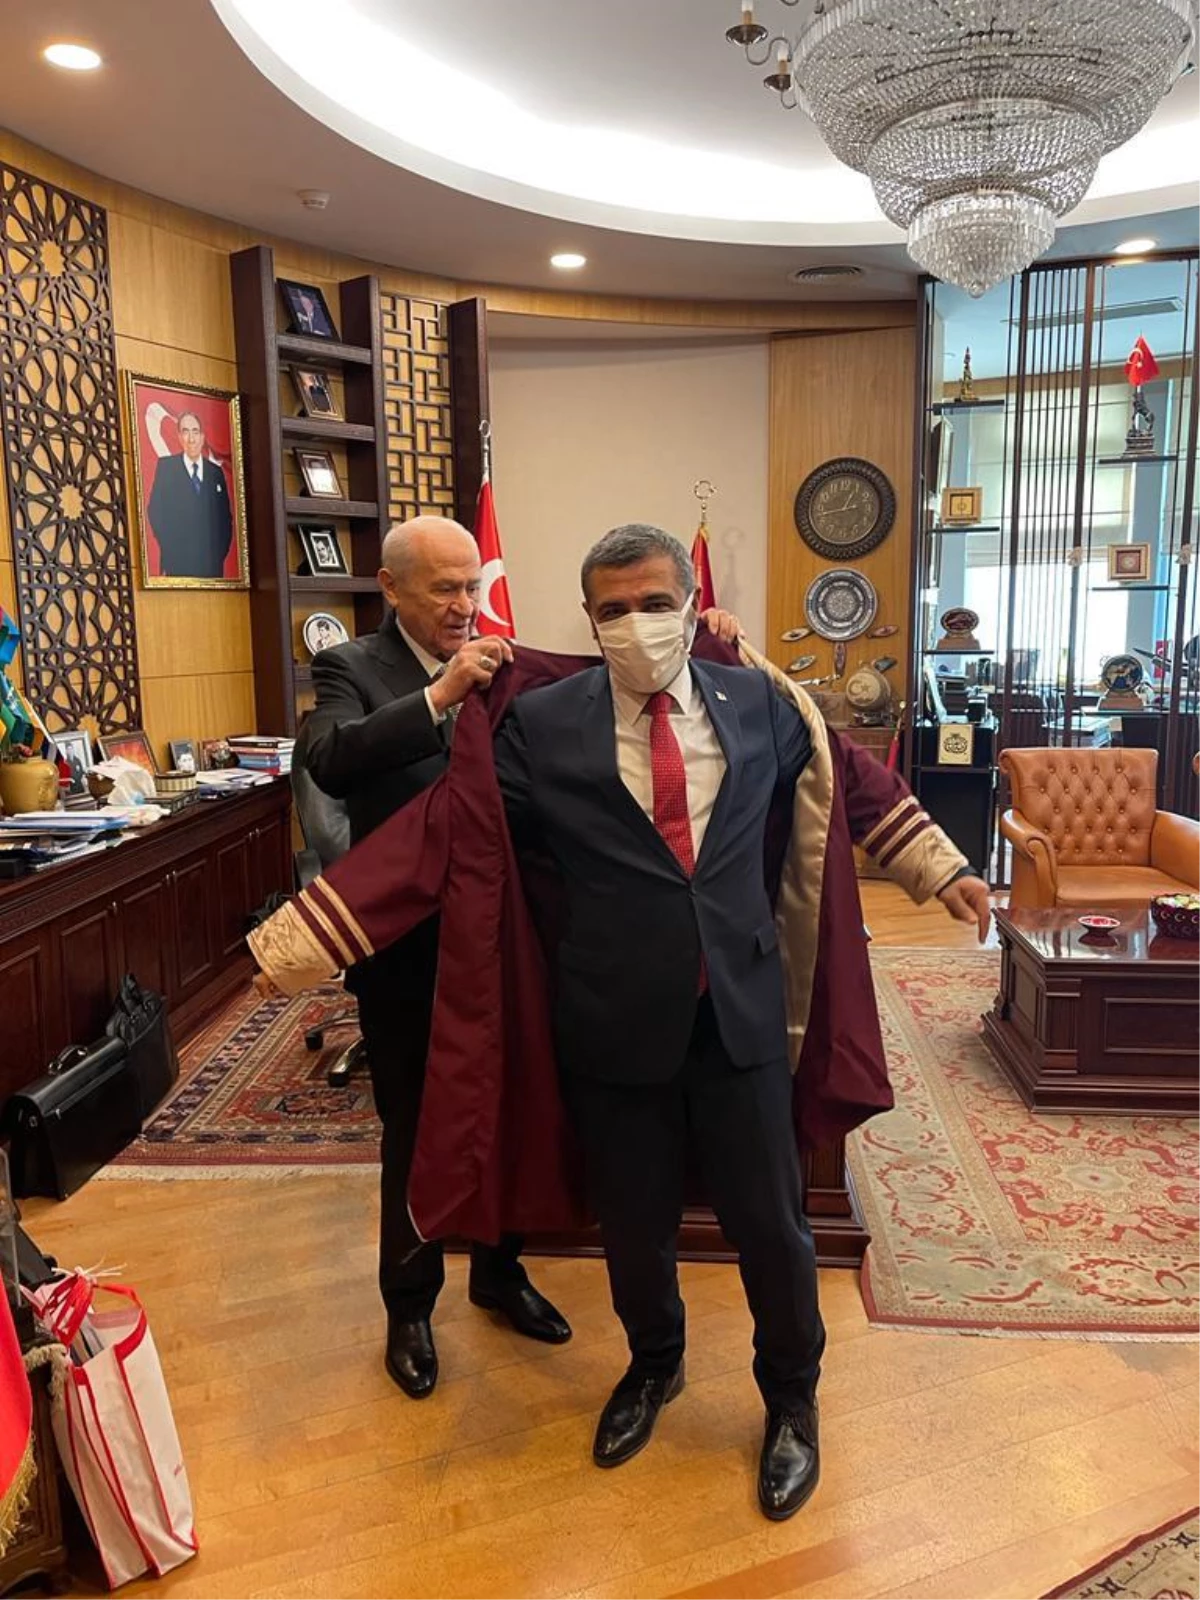 MHP Gaziantep Milletvekili Taşdoğan doçentlik cübbesi giydi